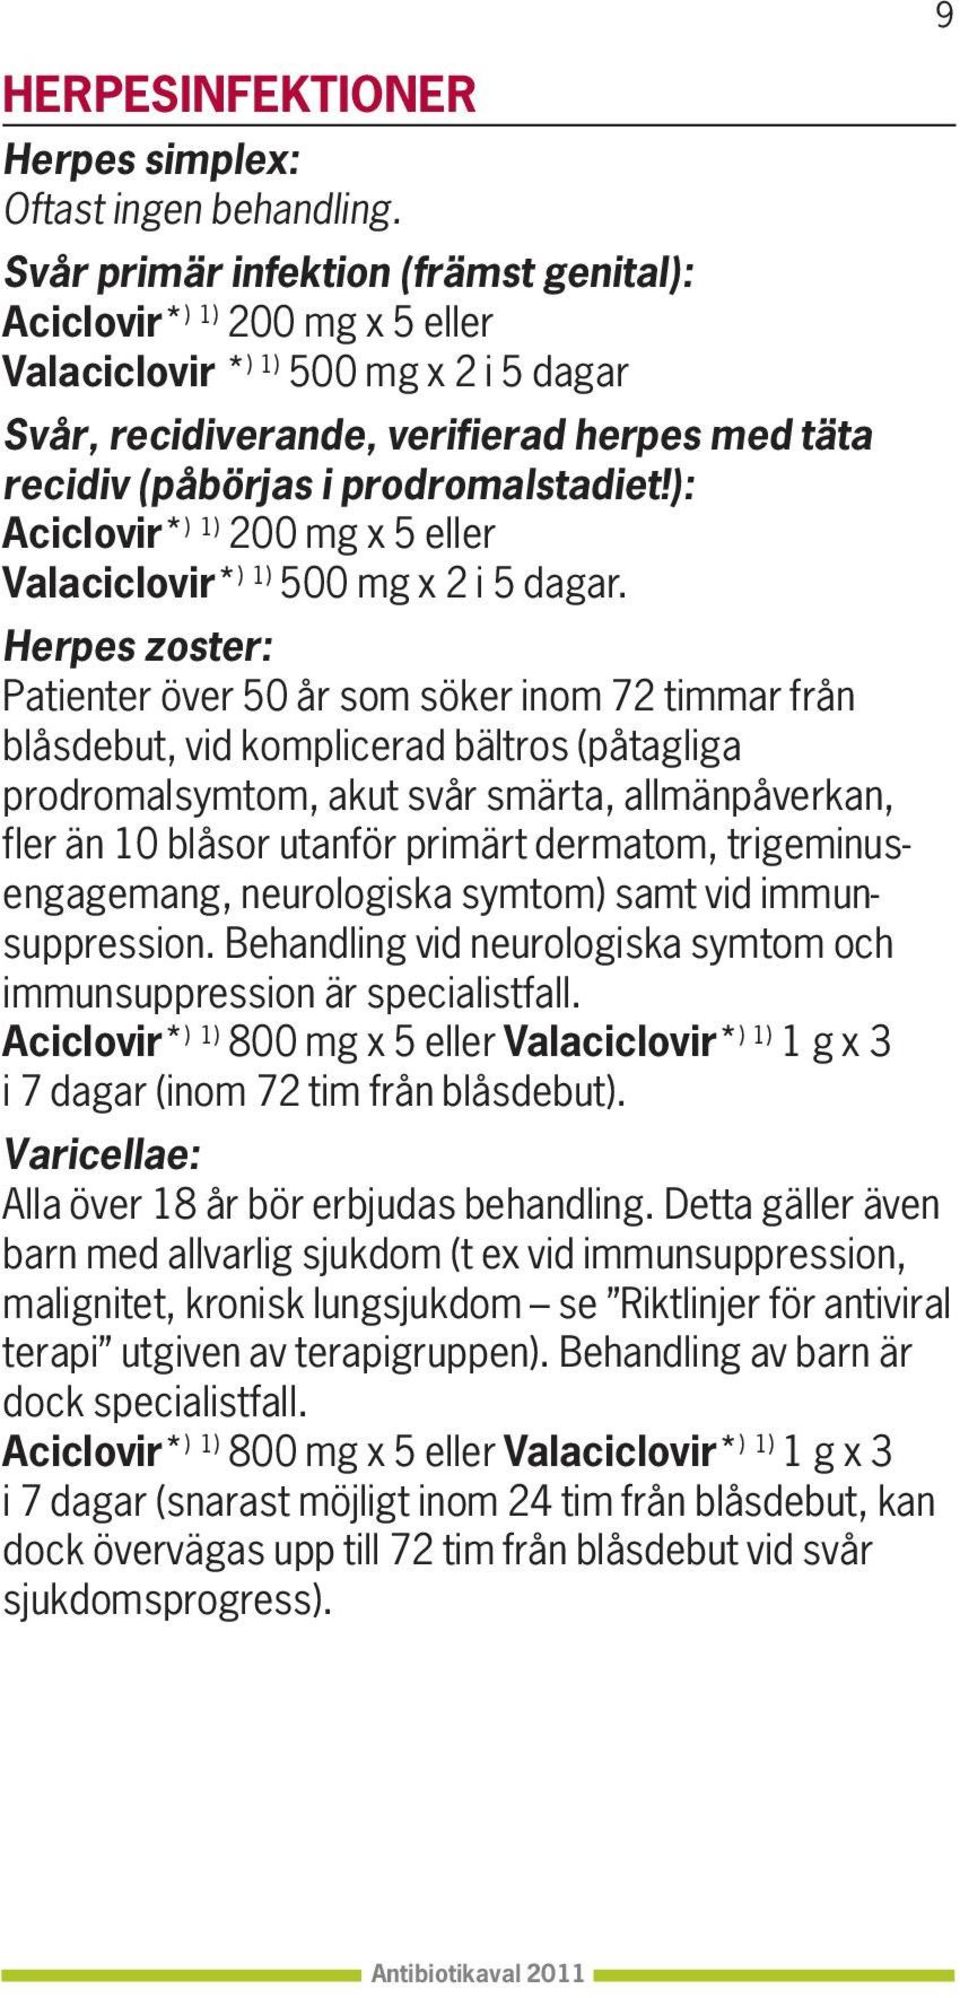 ): Aciclovir* ) 1) 200 mg x 5 eller Valaciclovir* ) 1) 500 mg x 2 i 5 dagar.